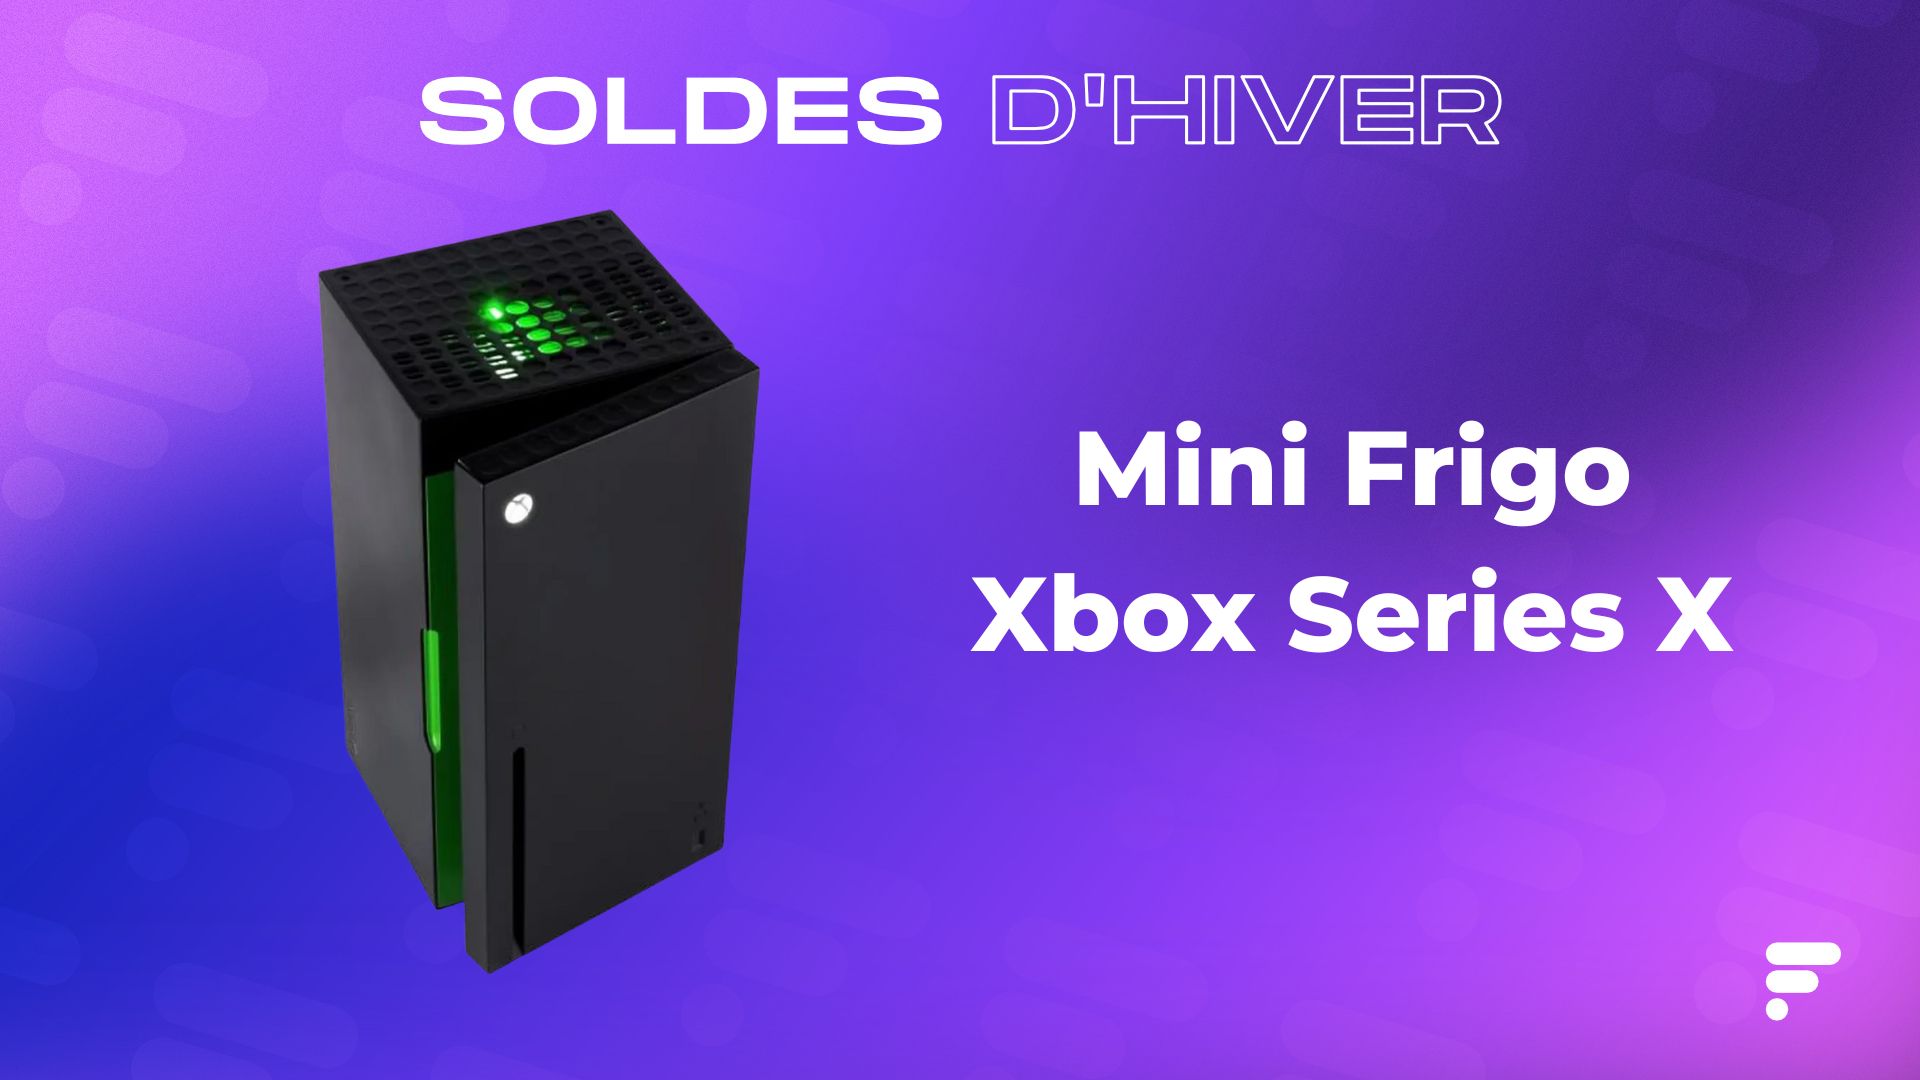 Xbox lance un nouveau mini-frigo Xbox Series X, plus petit et moins cher